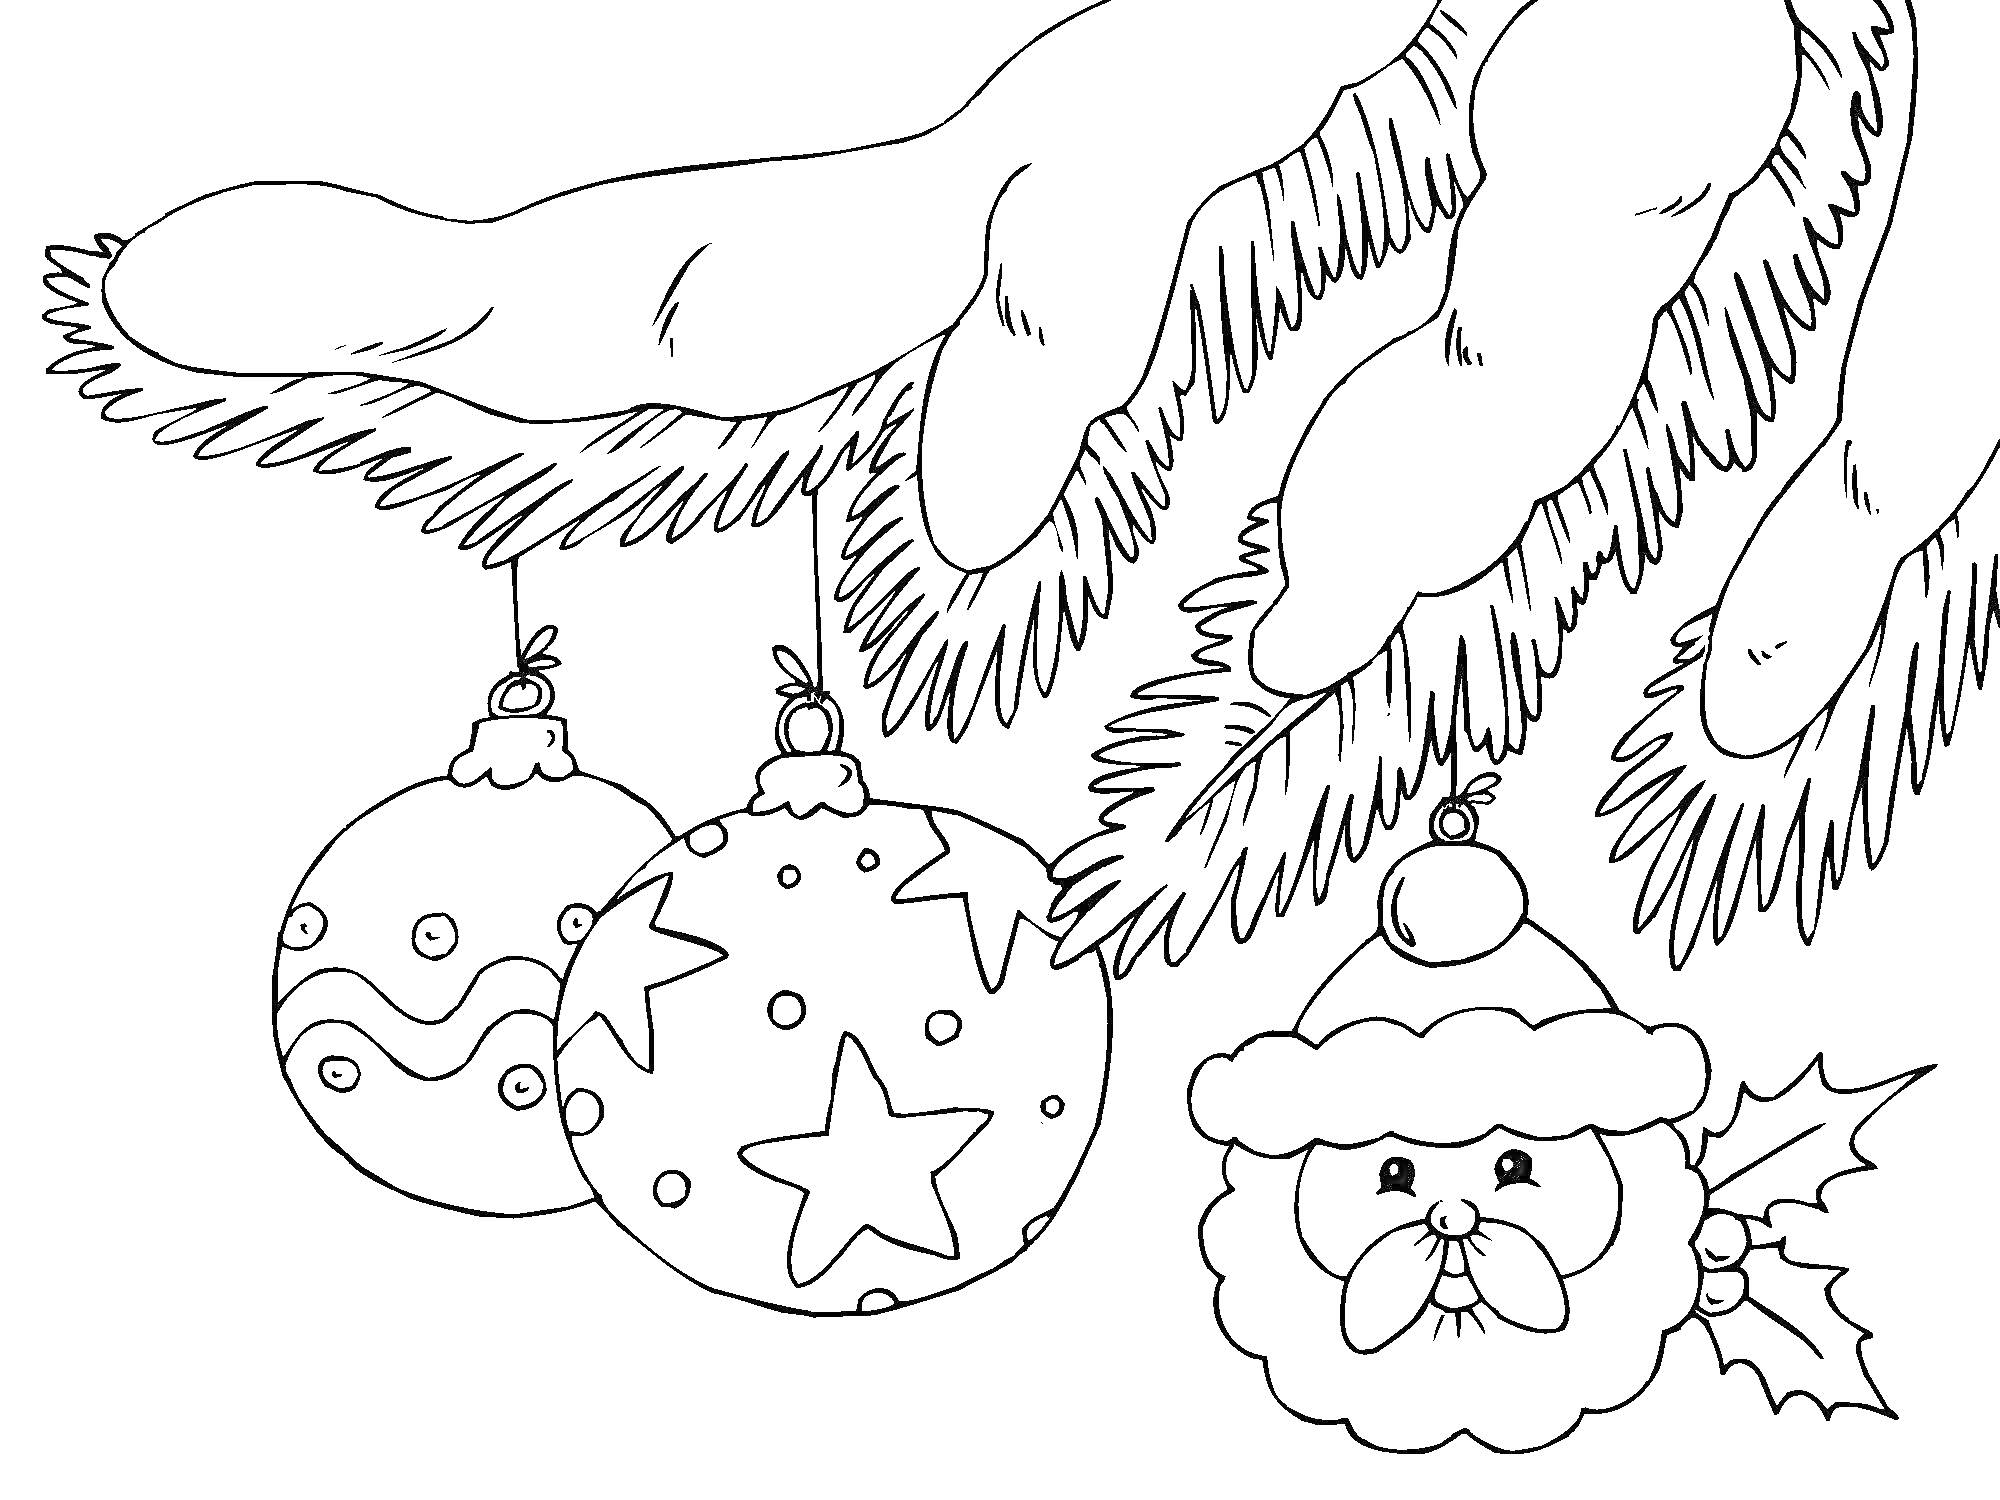 Елочные игрушки на ветке елки - два шара с узорами и игрушка в виде лица Санта-Клауса